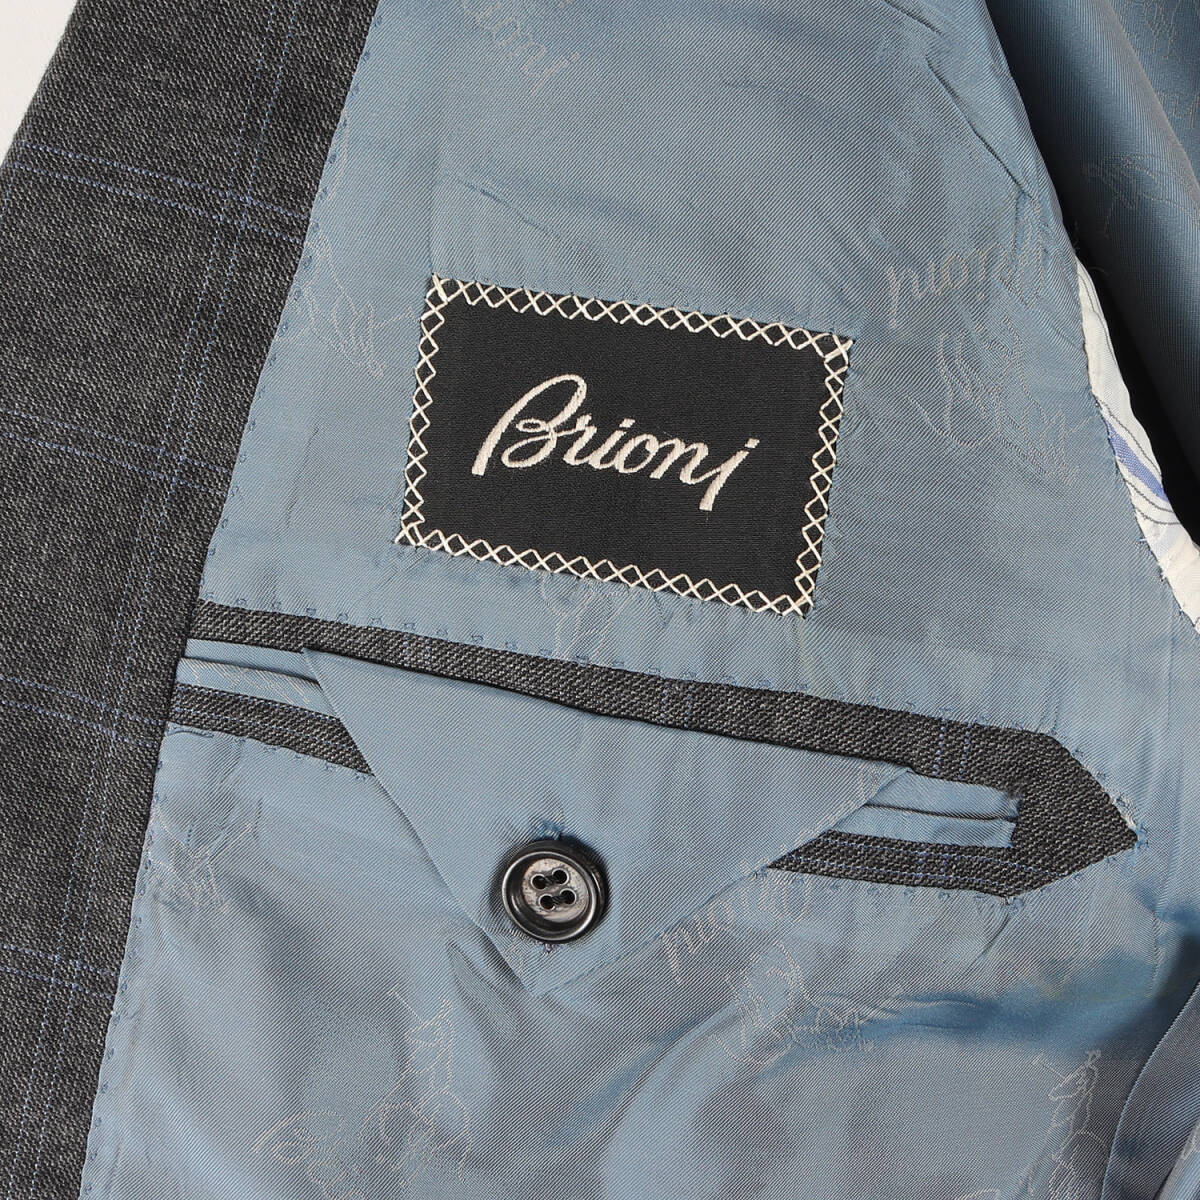 Brioni ブリオーニ サイズ:48 ウインドウペンチェック テーラードジャケット / スラックス / セットアップ スーツ グレー イタリア製_画像6